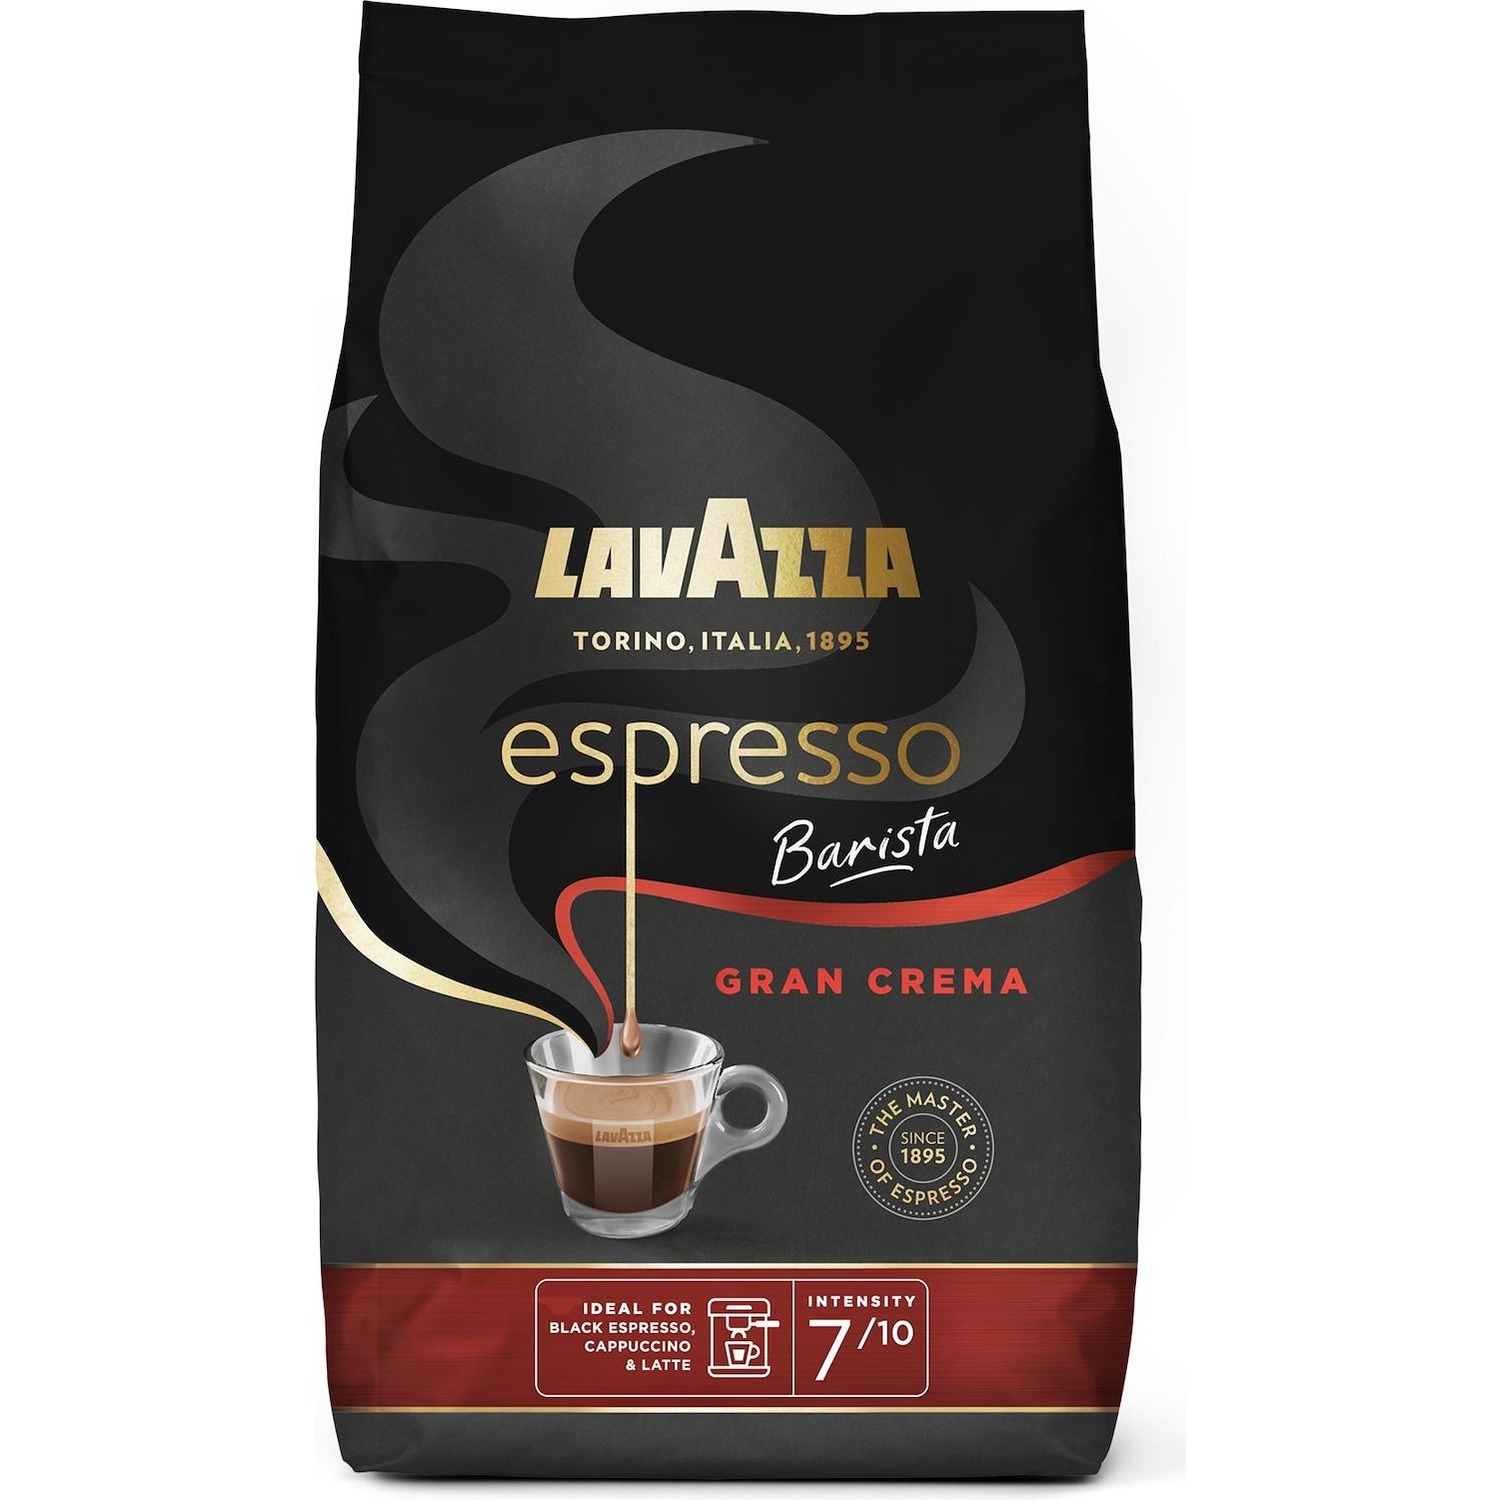 Immagine per Lavazza Barista Gran Crema Espresso 1Kg Caffe' in grani da DIMOStore